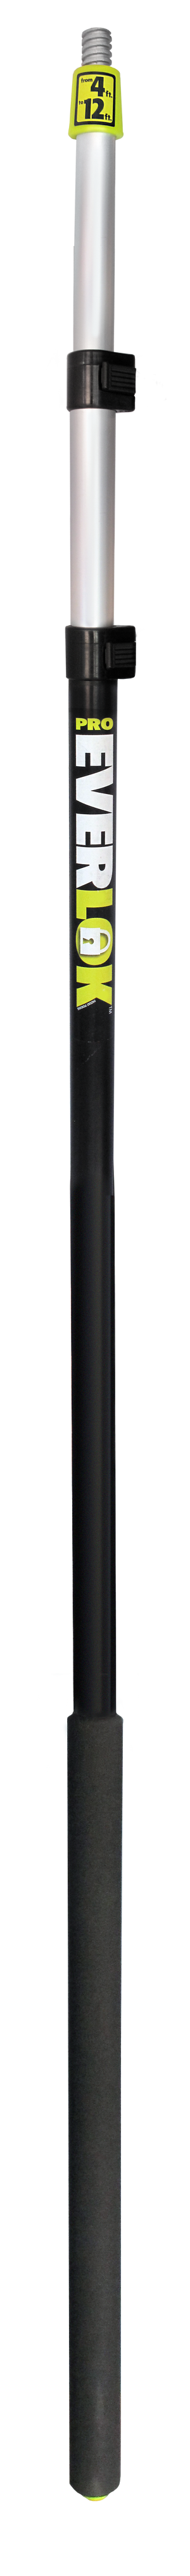 Pro Everlok aluminum extension pole 4'-12'